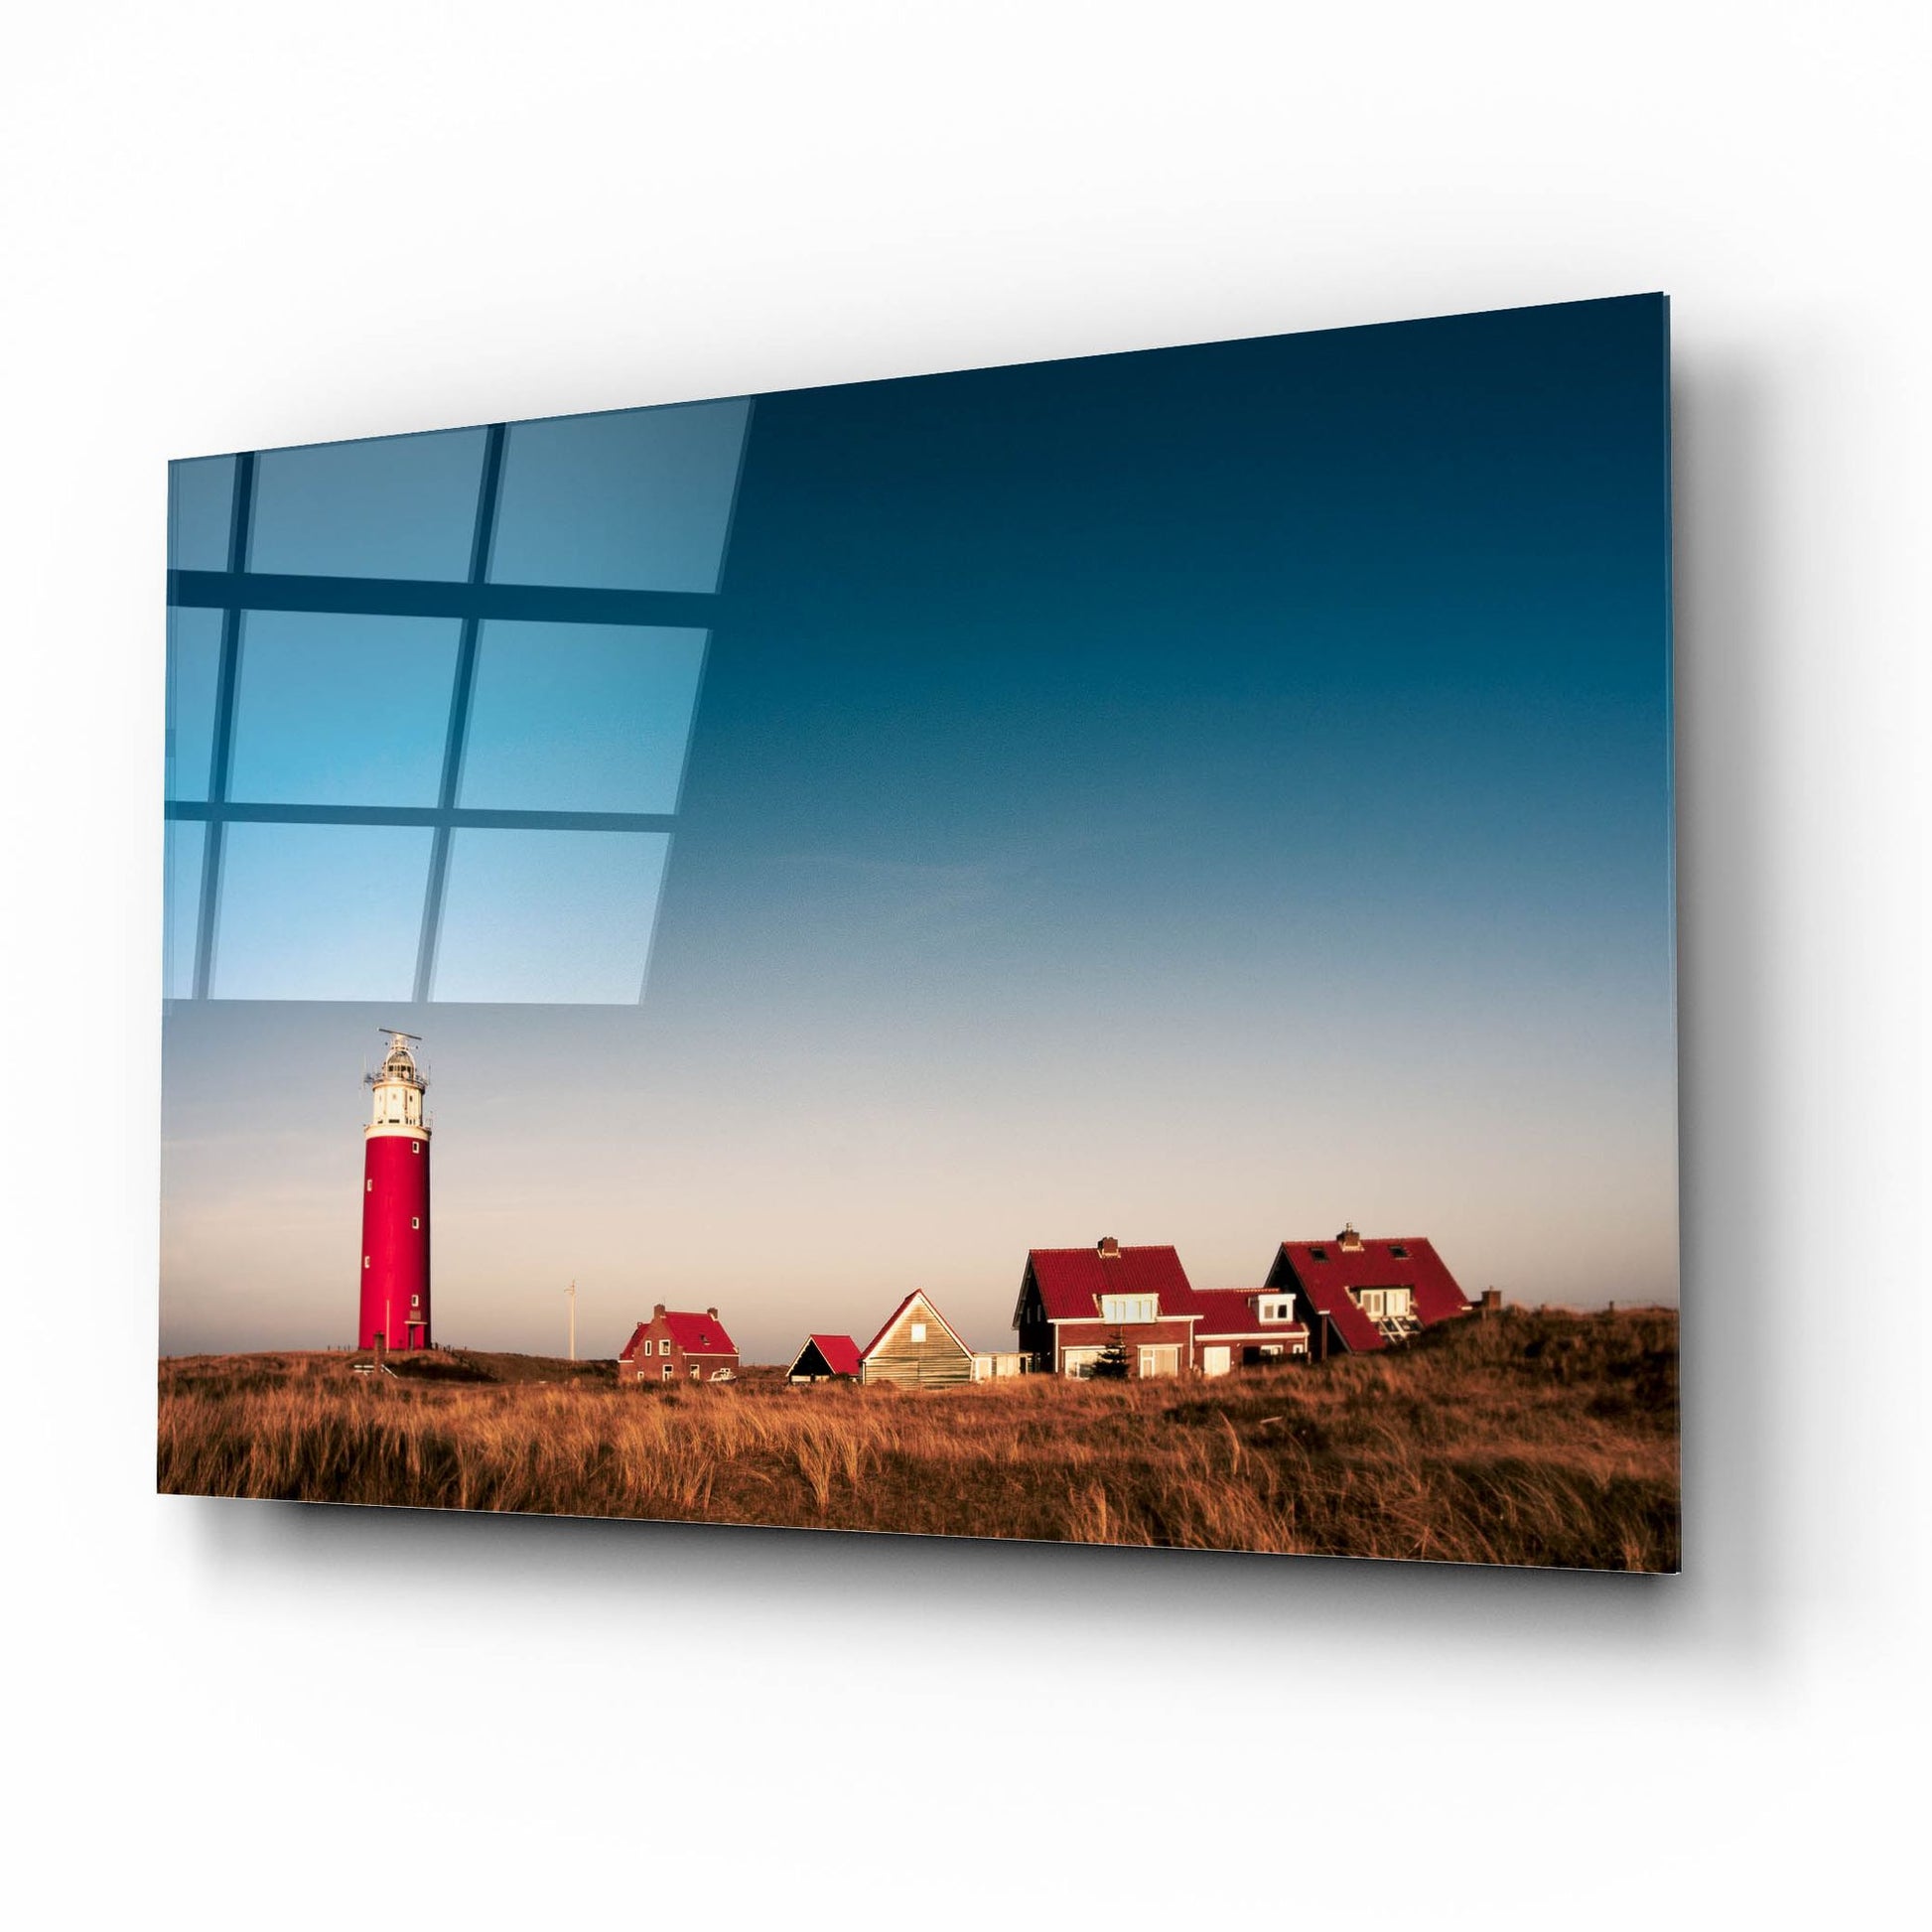 Epic Art 'Texel Lighthouse' by Istvan Nagy, Acrylic Glass Wall Art,16x12